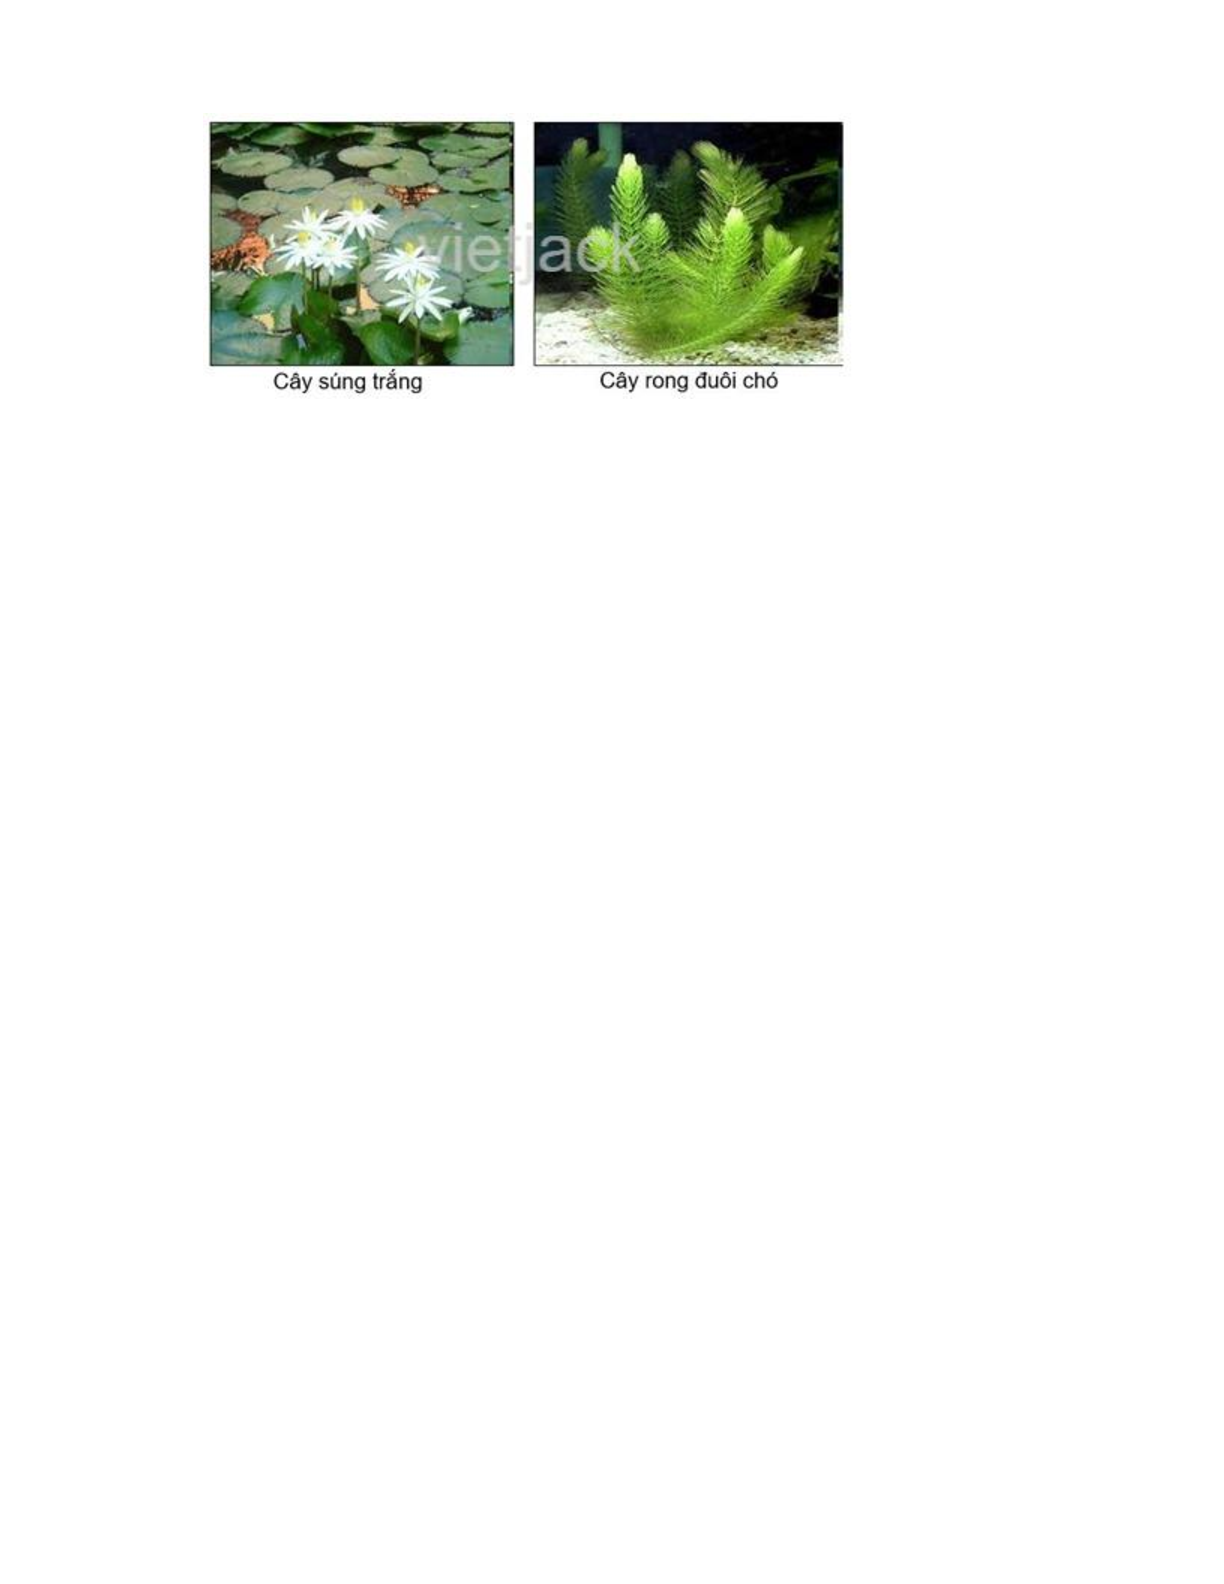 Giải SGK Tự nhiên và Xã hội lớp 2 trang 58, 59, 60, 61 Bài 14: Thực vật sống ở đâu – Chân trời sáng tạo (trang 6)